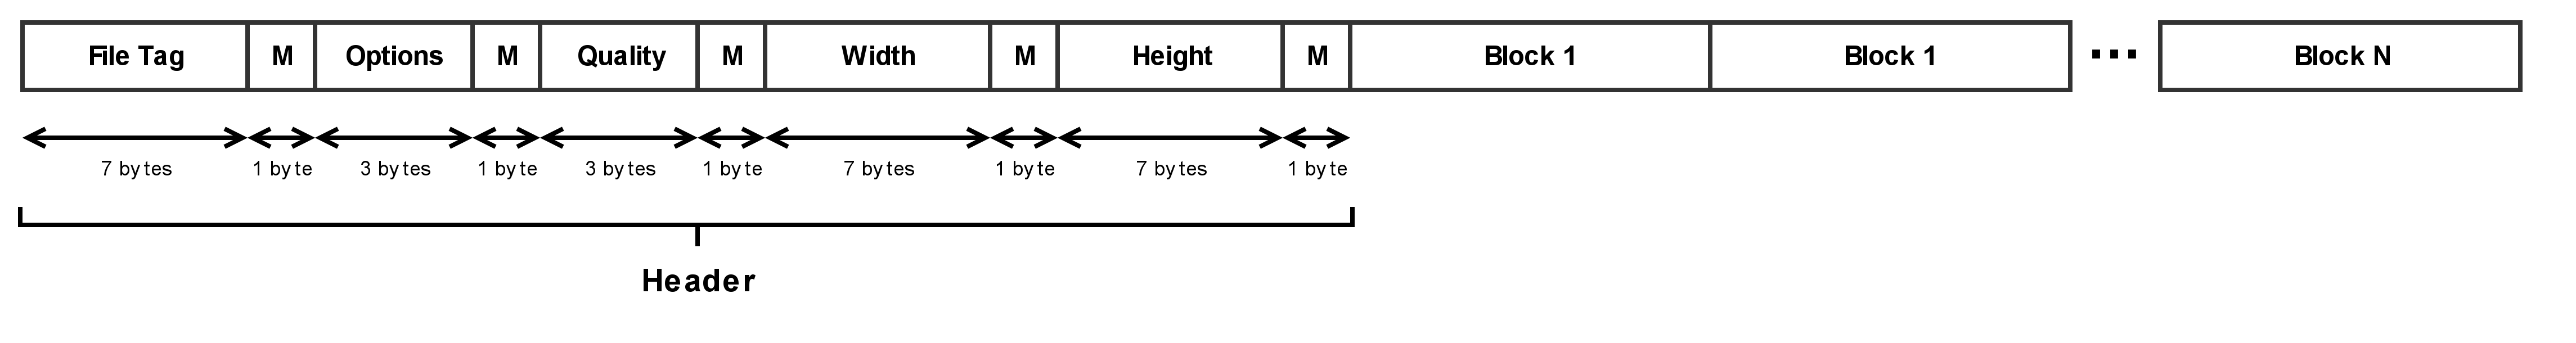 GPJ file structure